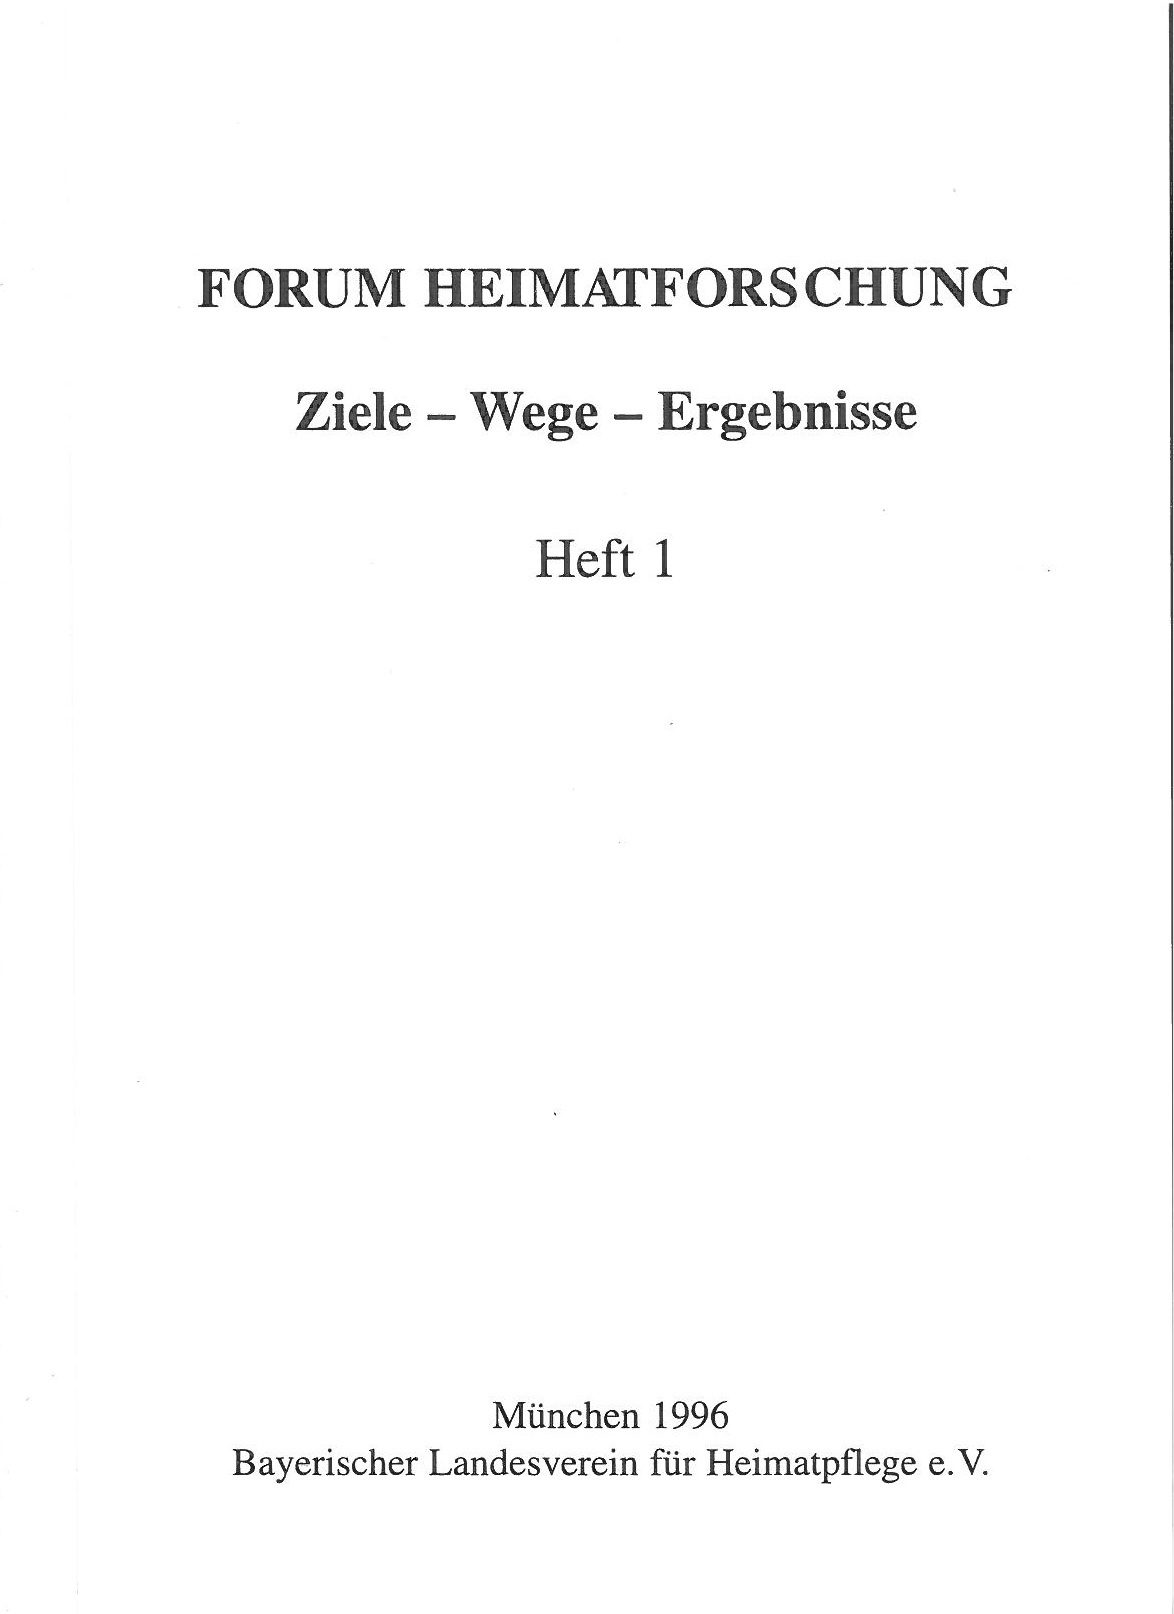 Forum Heimatforschung 1